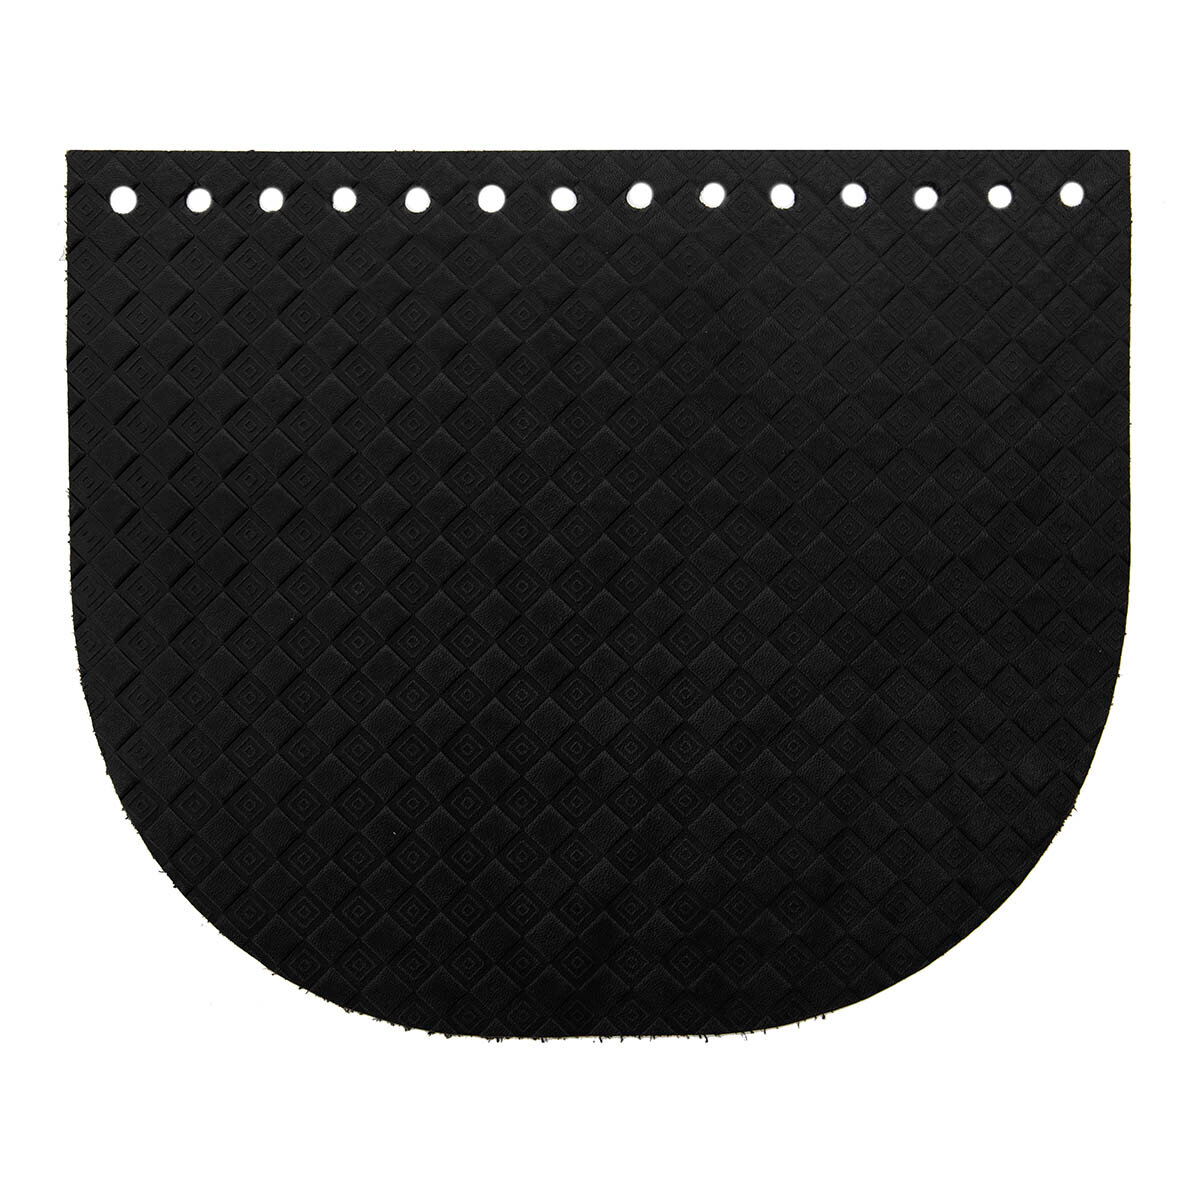 Крышечка для сумки Ромбик - клеточка, 20,4см*17,2см, дизайн №2009, 100% кожа (черный)